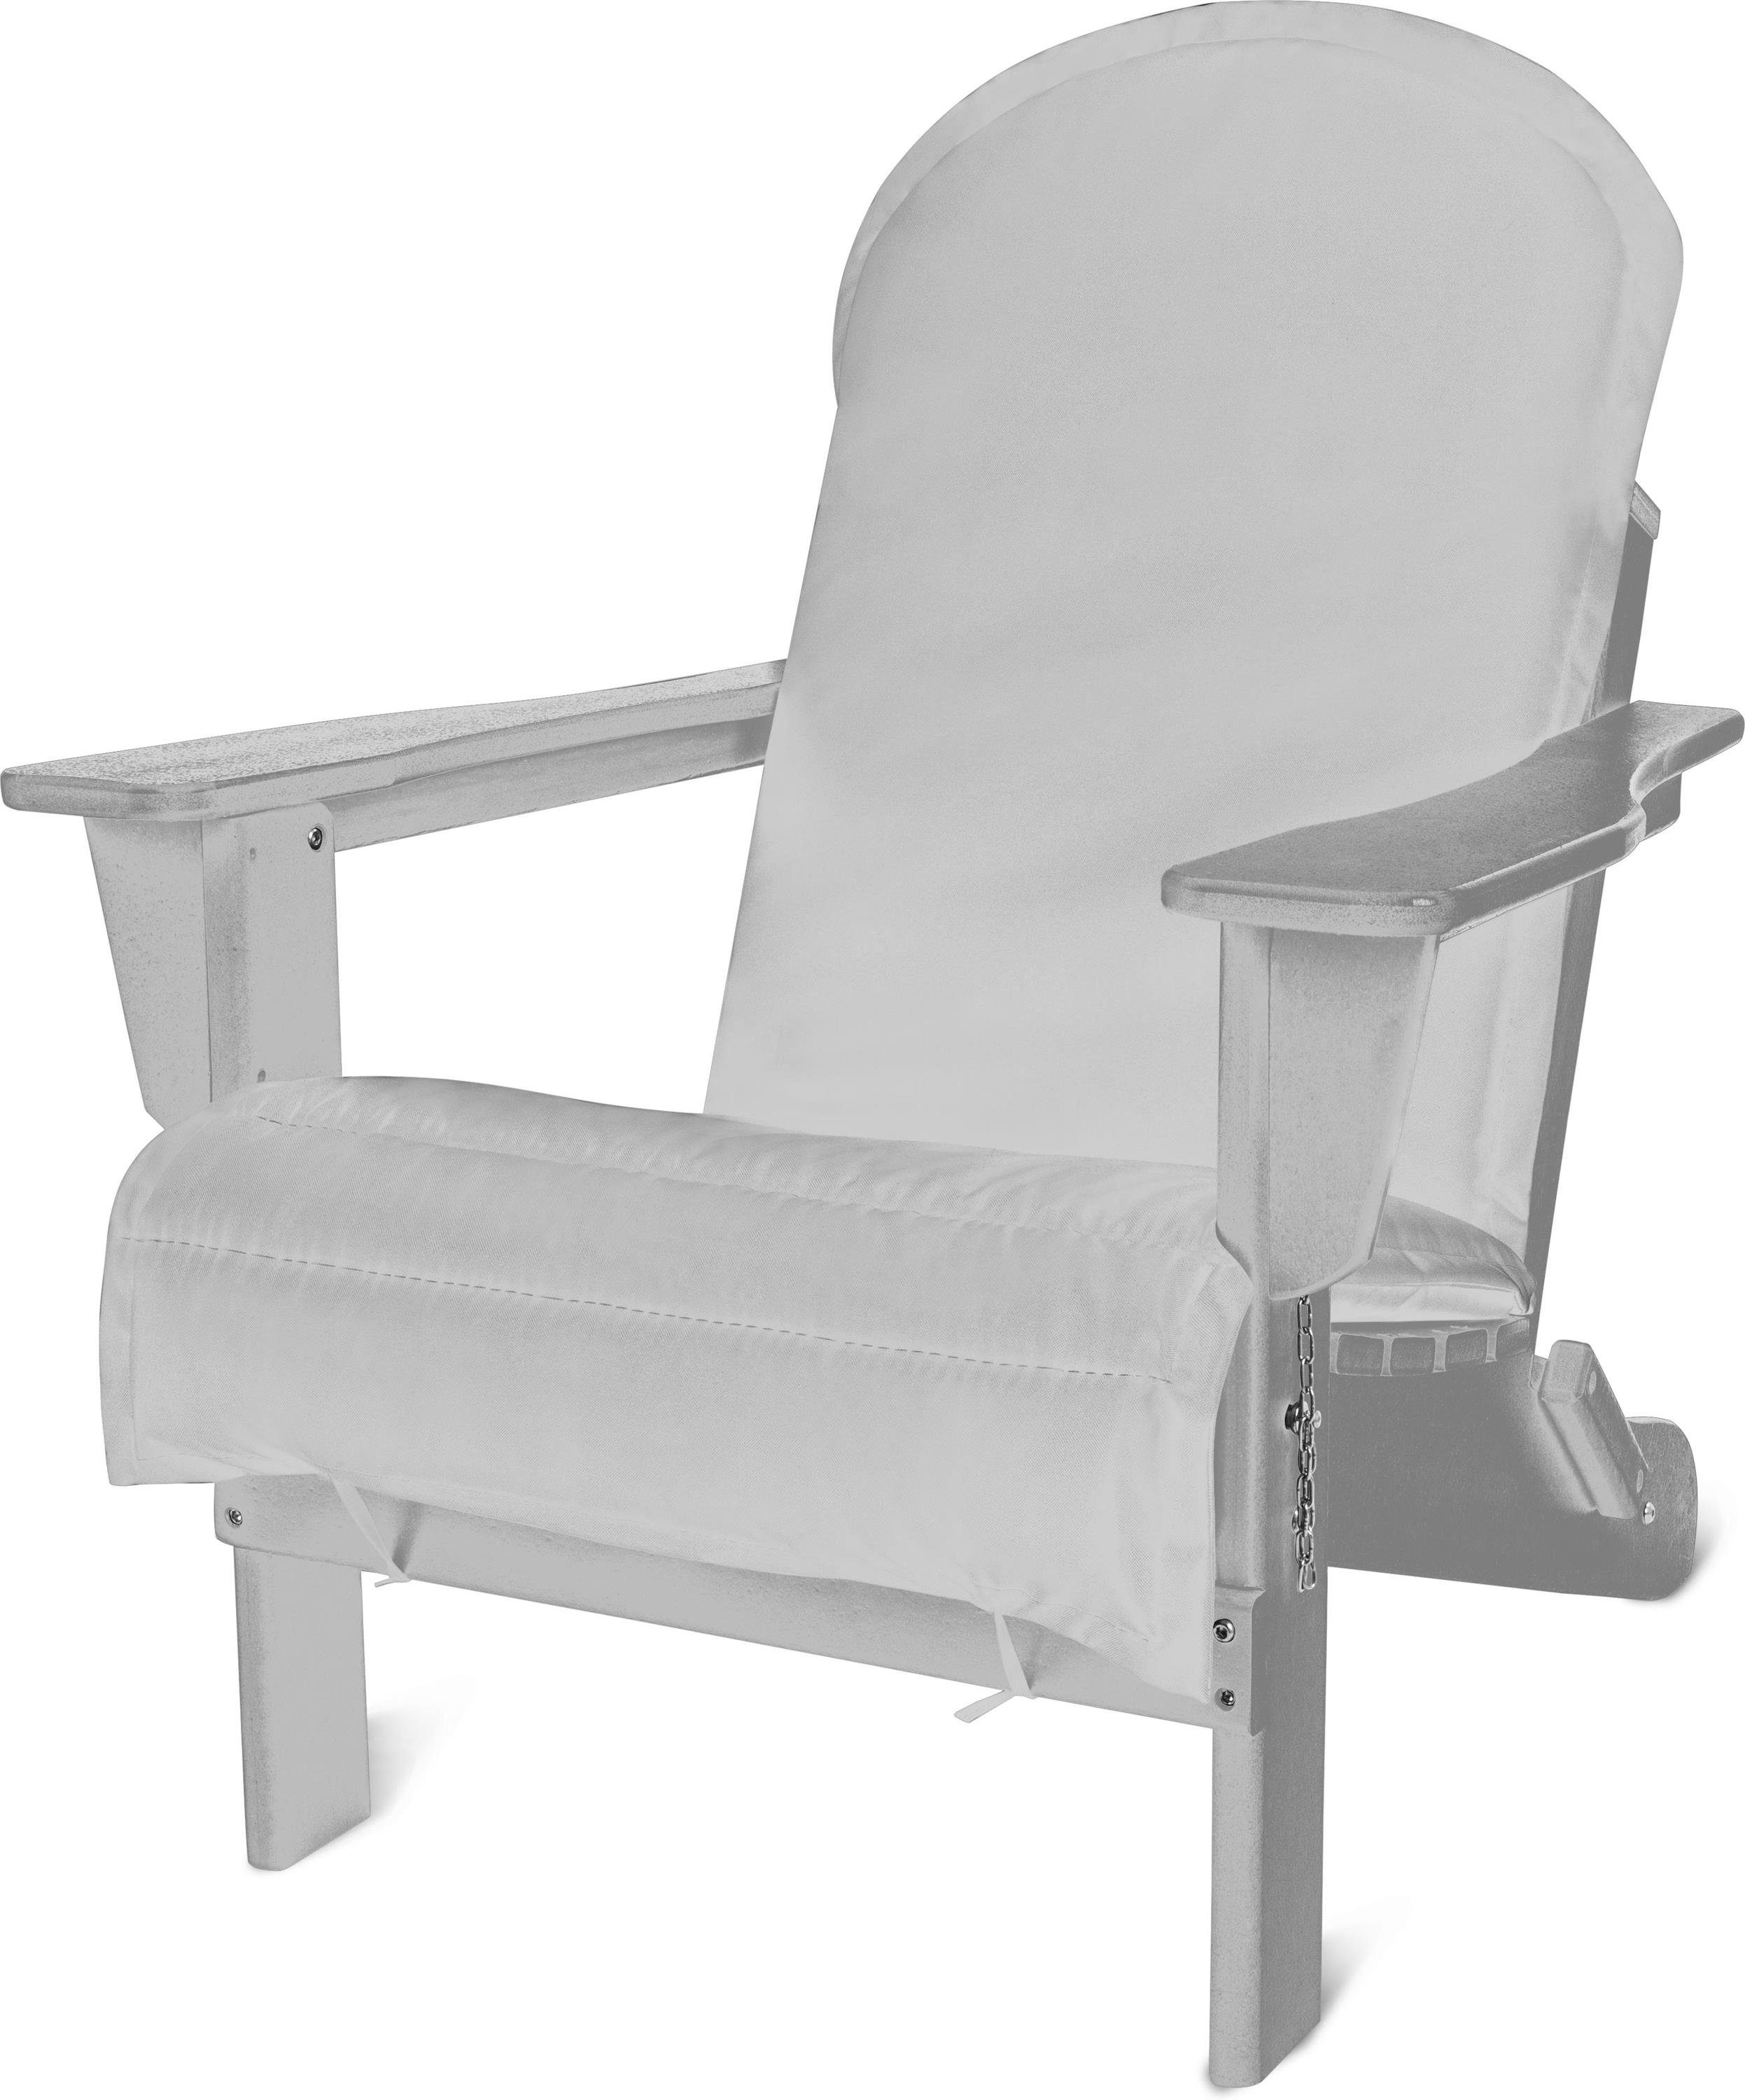 Aspero Gartenstuhl Gartenstuhl Adirondack mit Auflage, gemütlicher und  stabiler Outdoor Stuhl